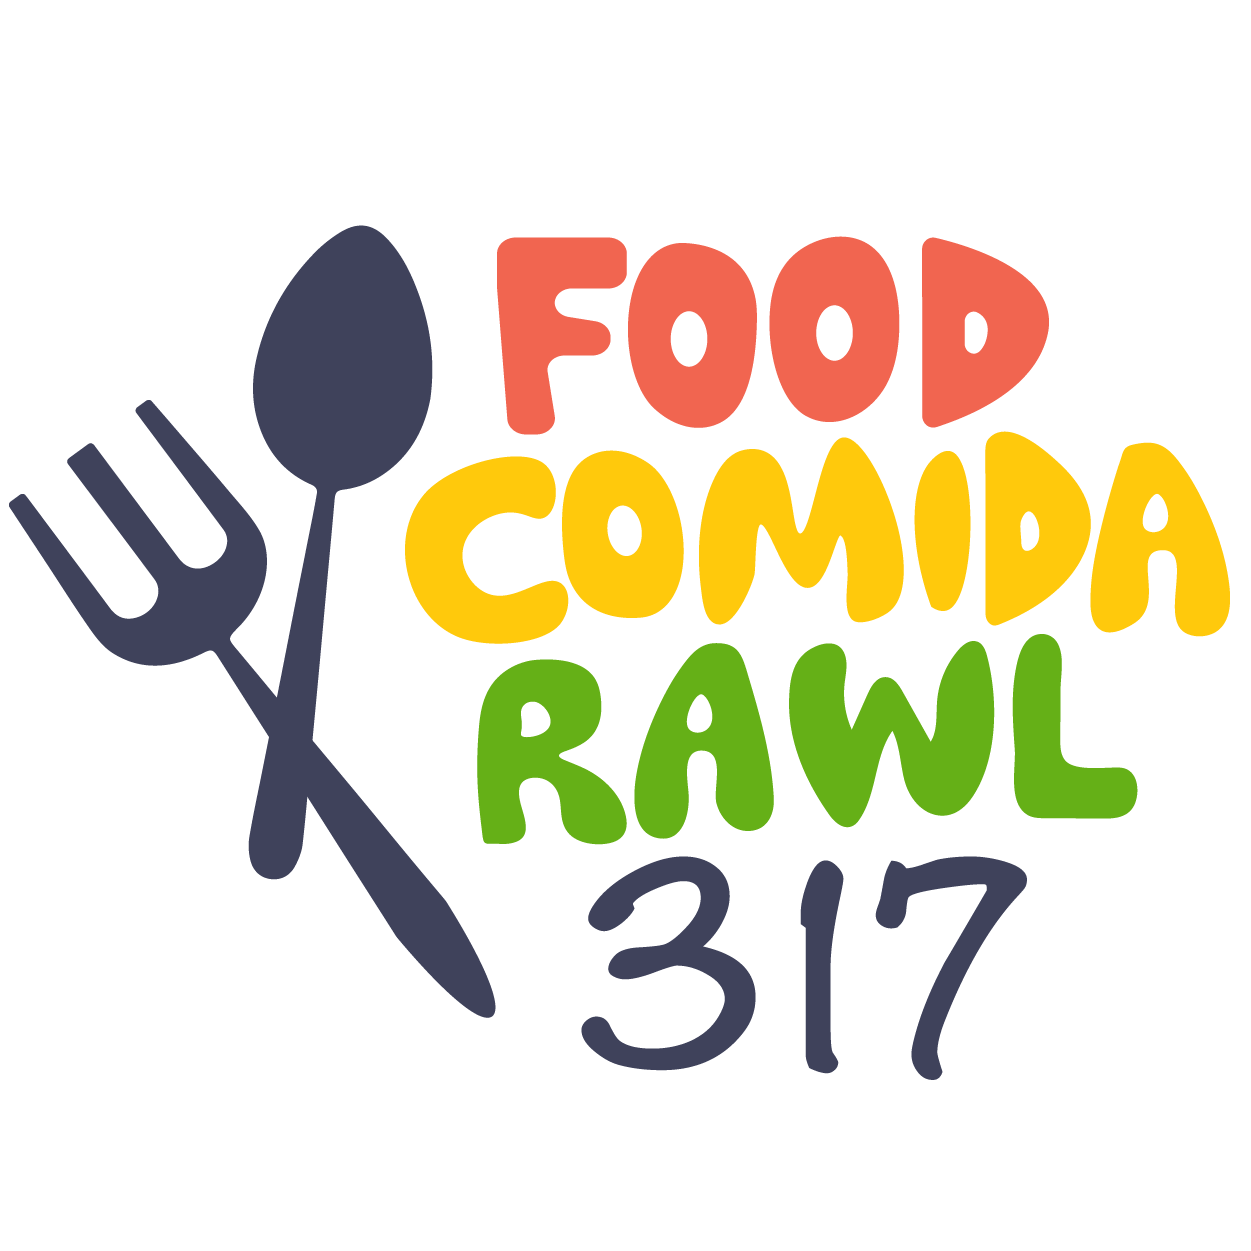 Food/Comida/Rawl logo